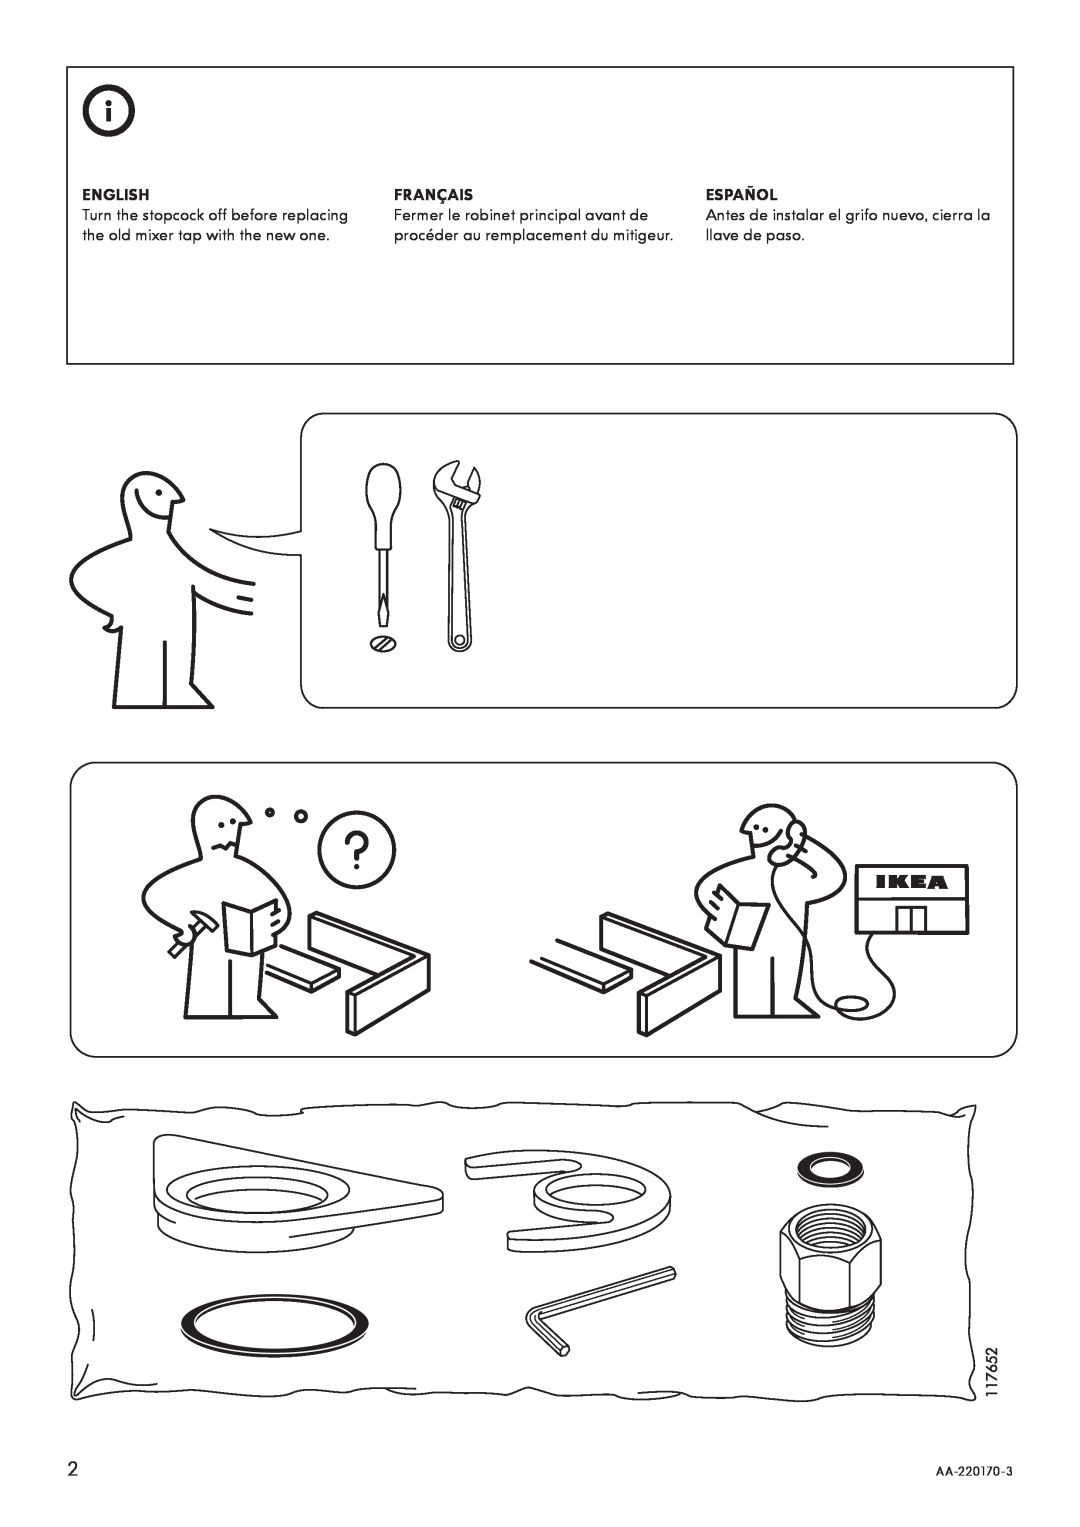 IKEA AA-220170-3 manual English, Français, Español 